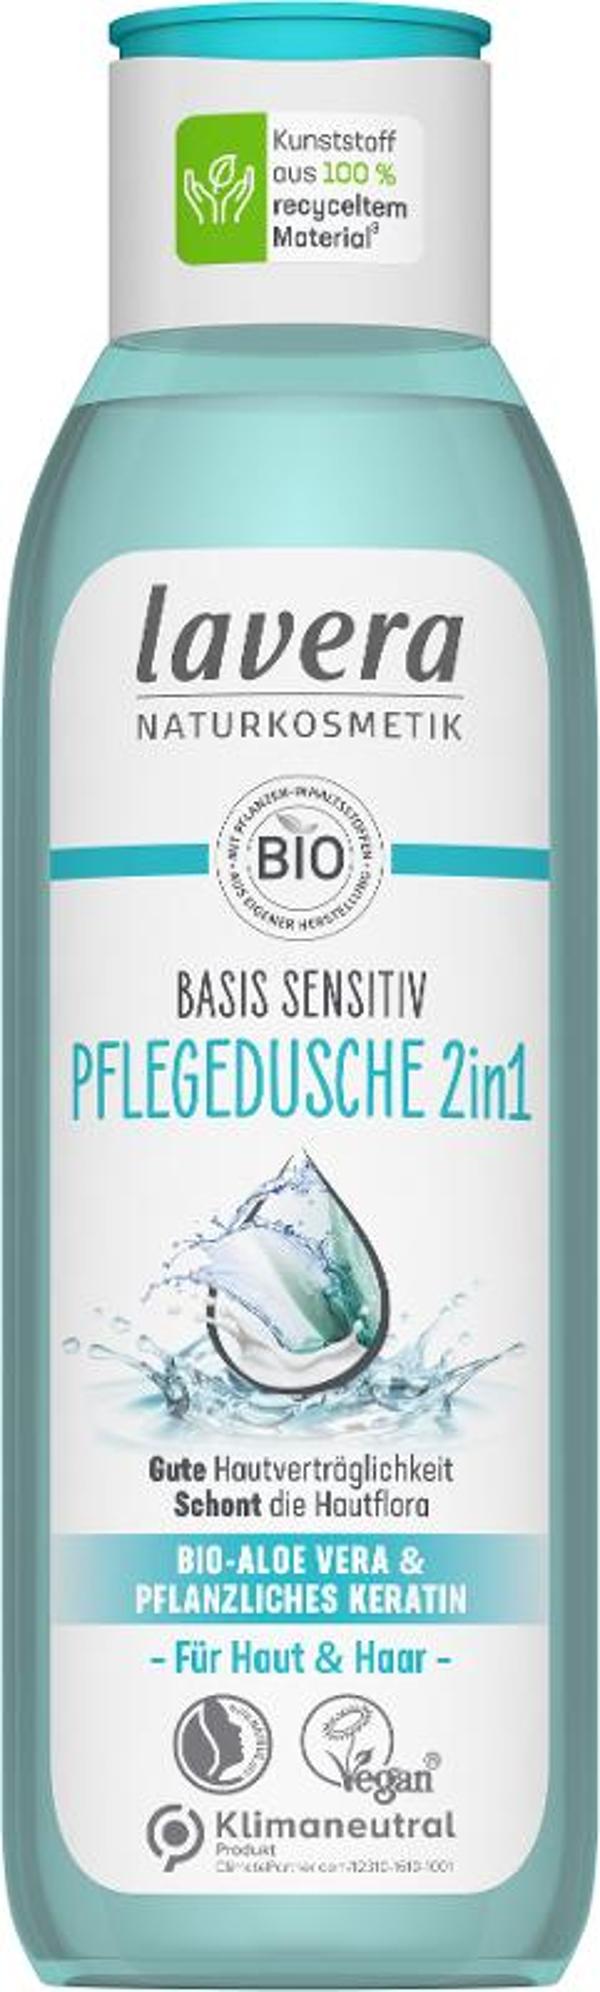 Produktfoto zu Basis sensitiv Pflegedusche 2in1, 250 ml - 25% reduziert, da MHD 05.2024